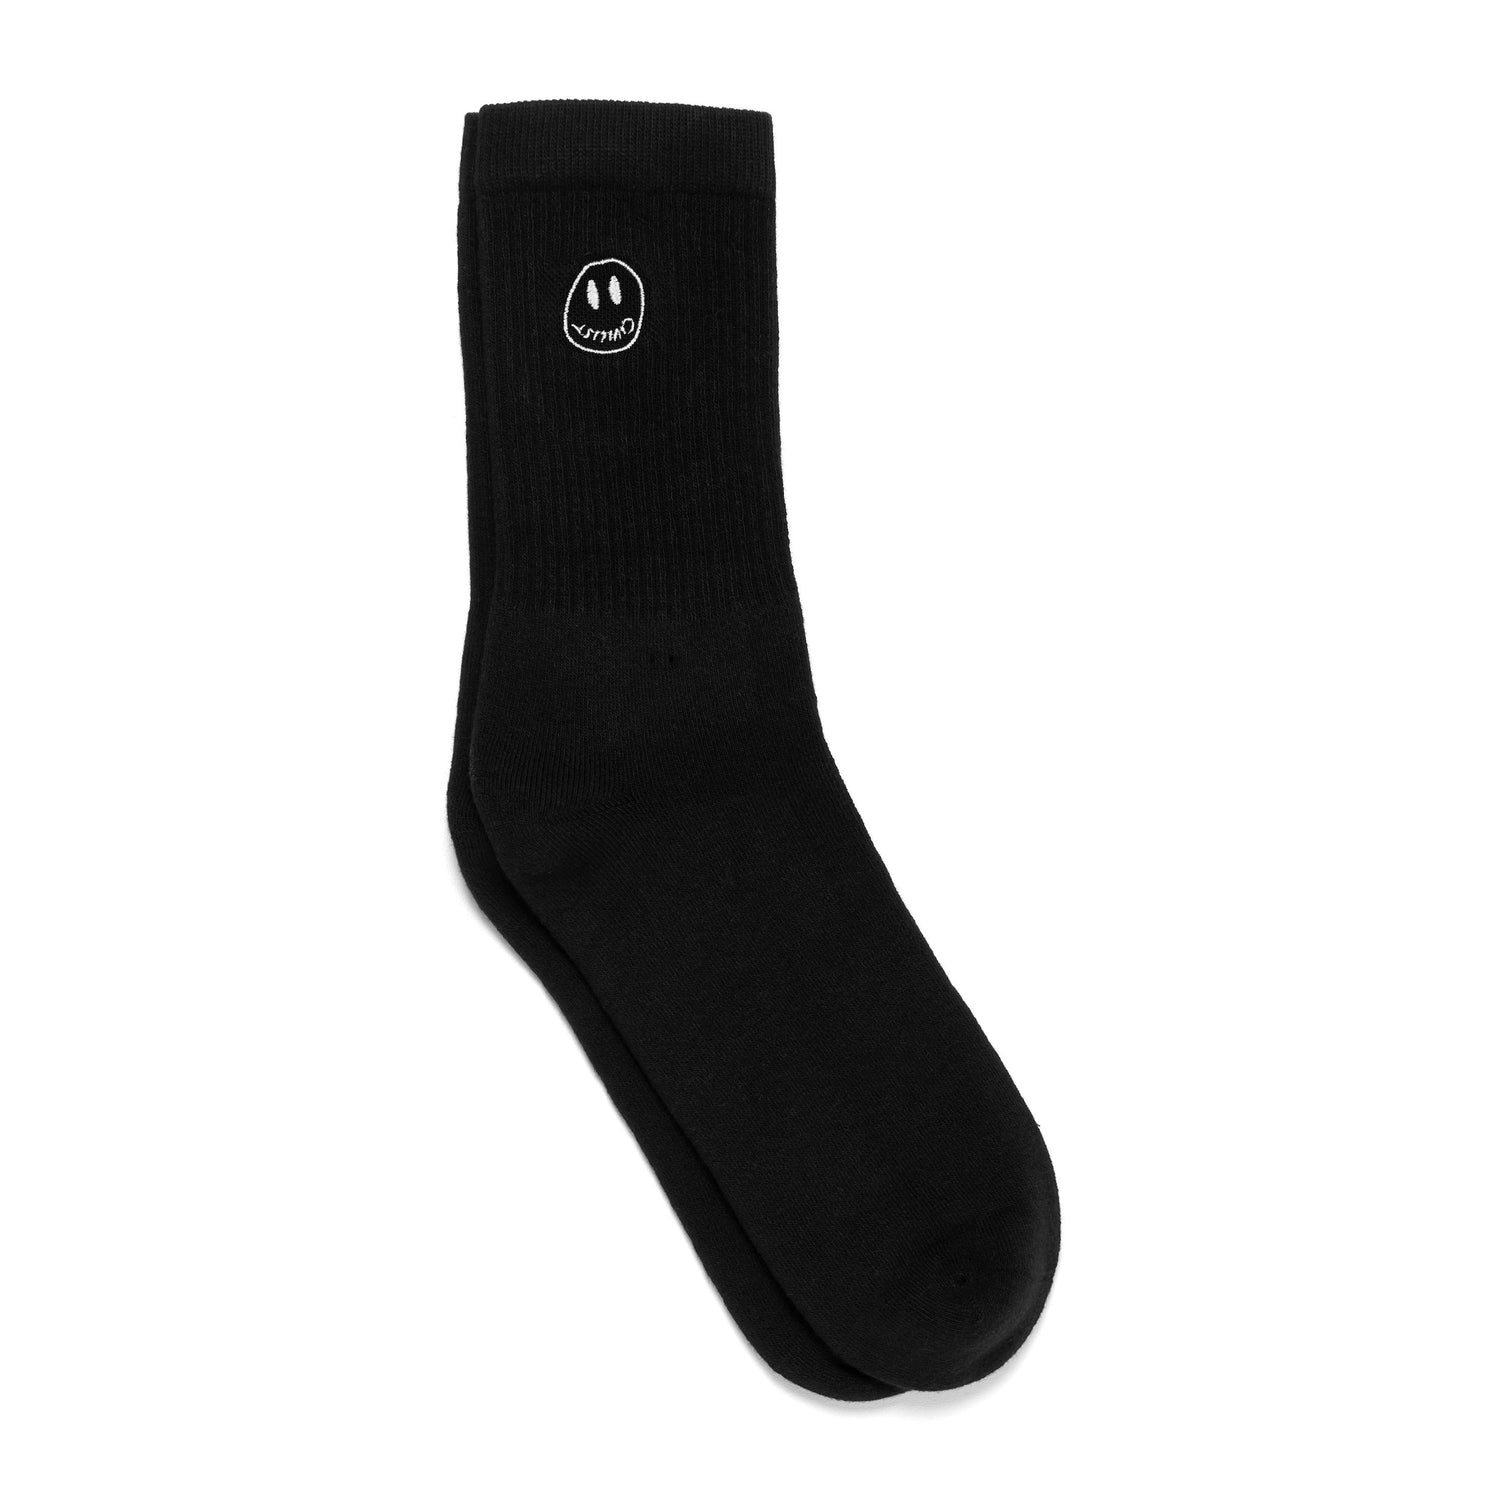 Mono Smiler Socks, Black